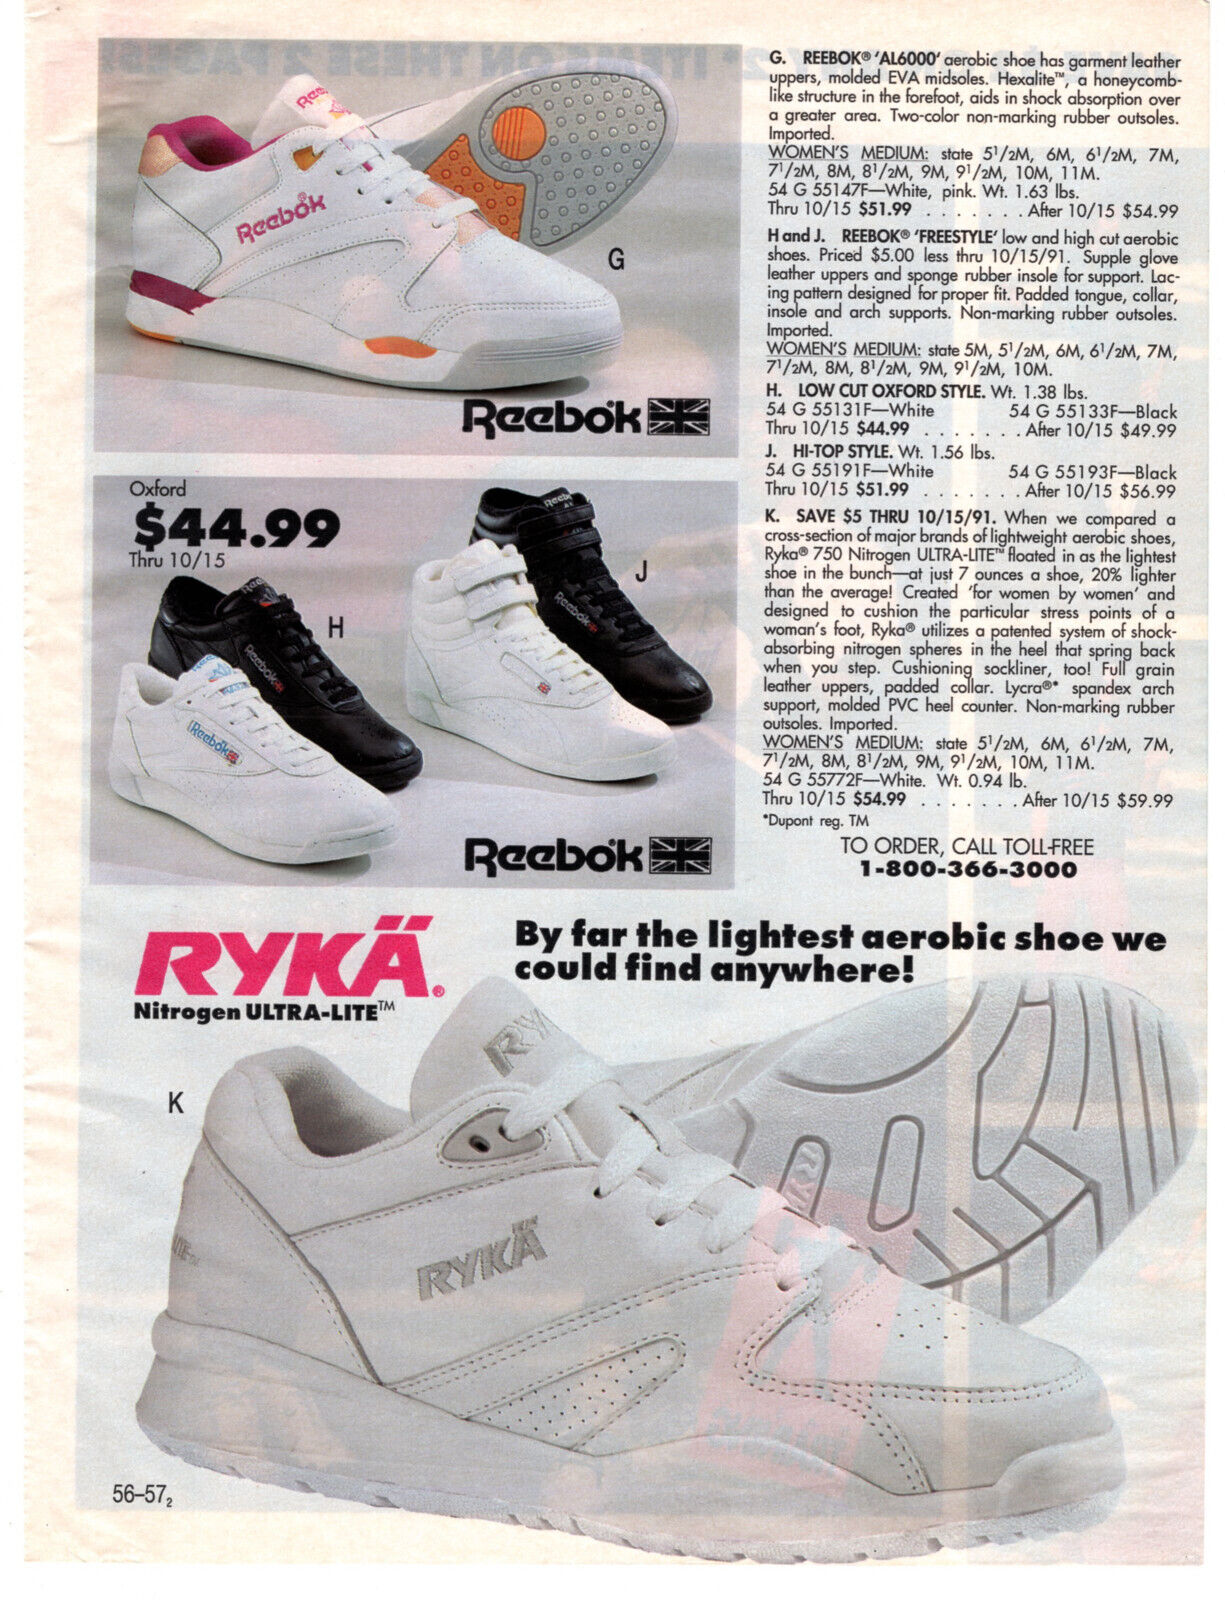 REEBOK AL6000 FREESTYLE RYKA Womens Sneakers 1991 Vintage Print Ad Original